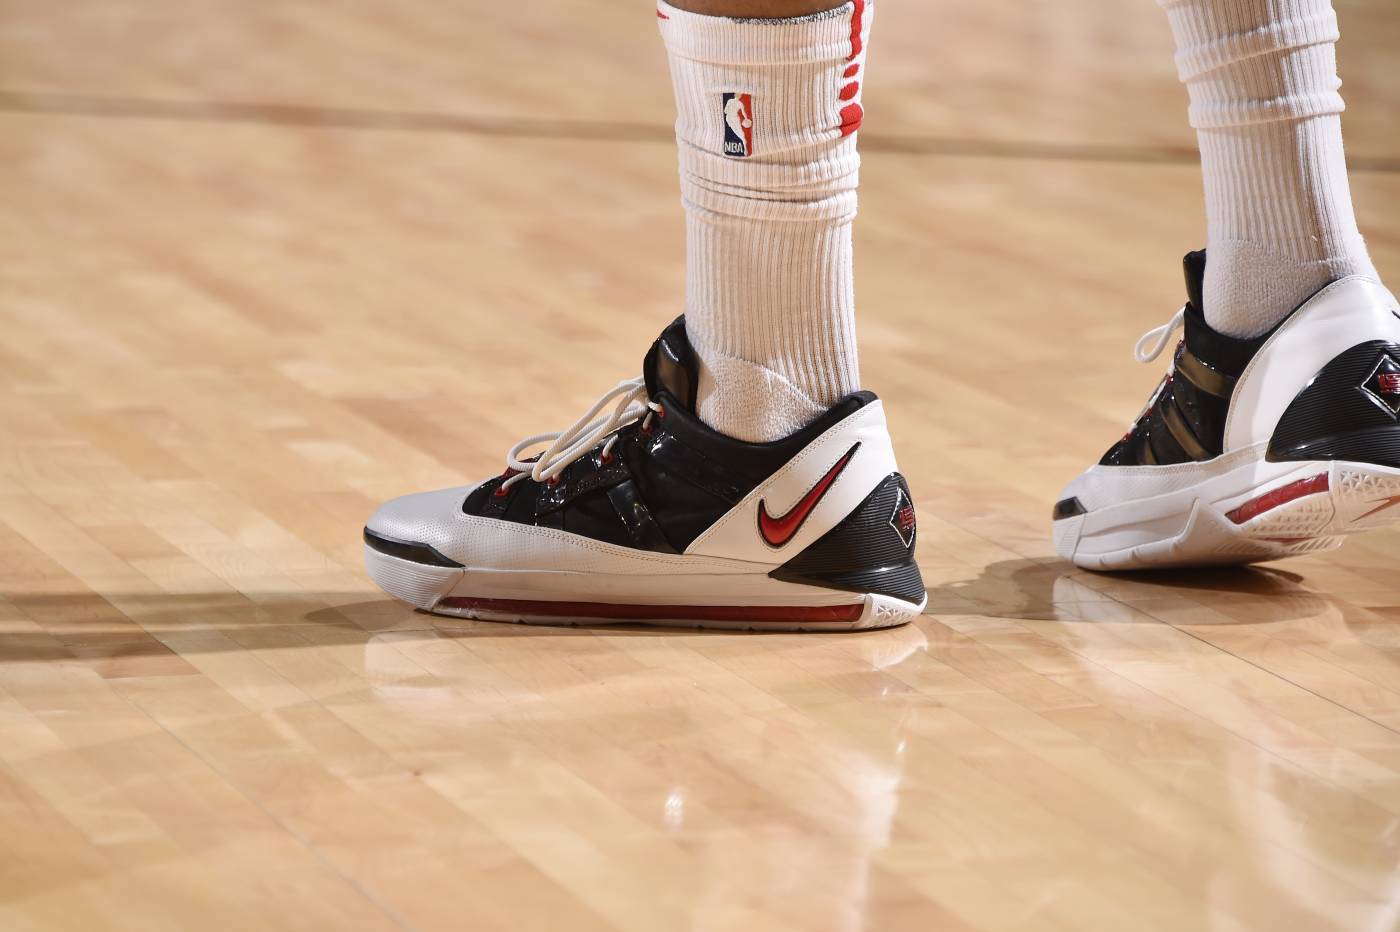 Chi tiết và đầy đủ các mẫu giày khủng của Thánh giày P.J. Tucker tại NBA Playoffs 2018 (kỳ 1) - Ảnh 3.